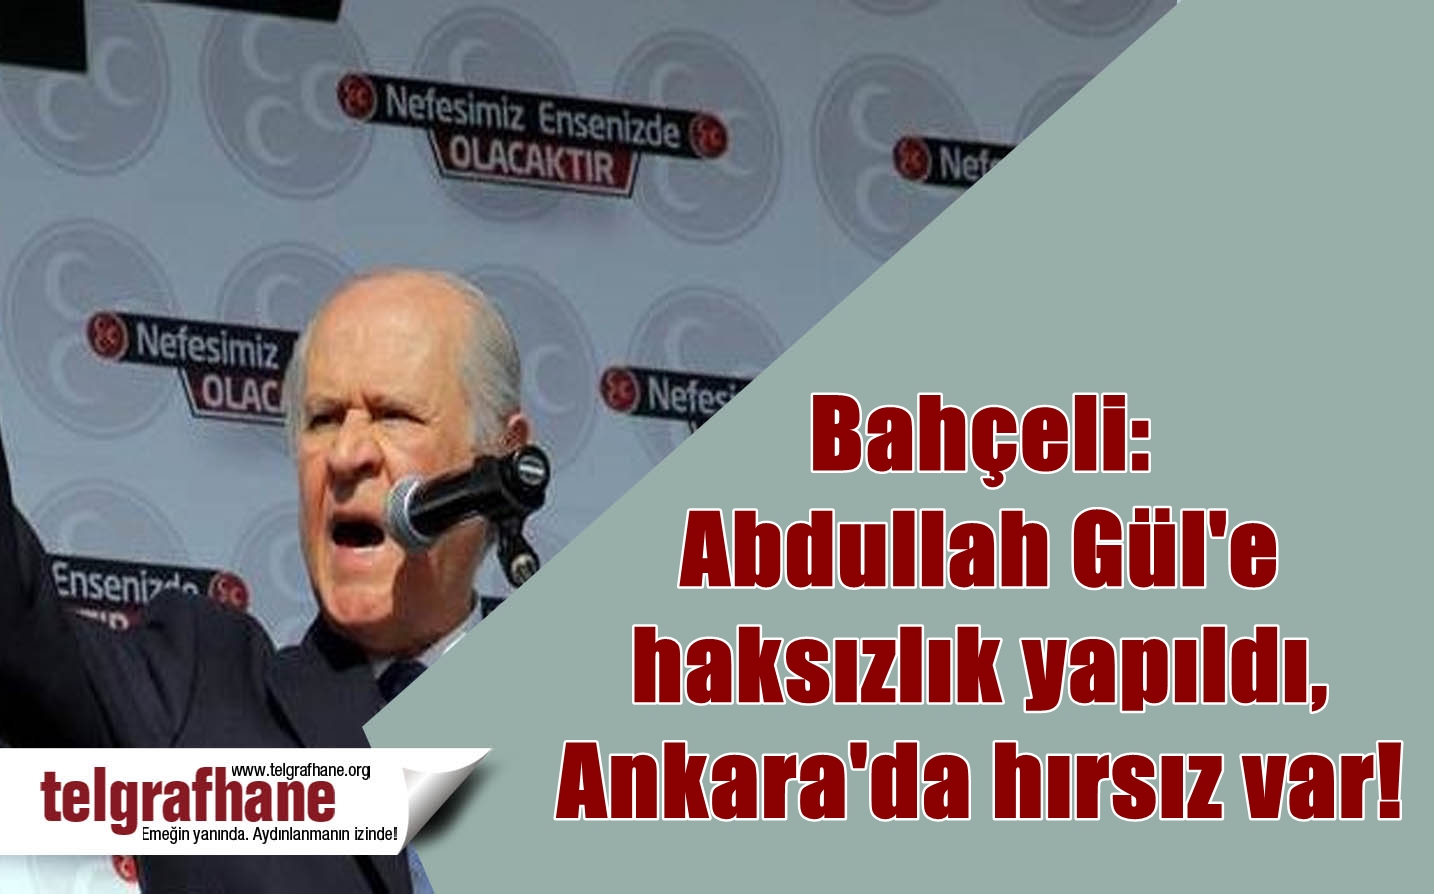 Bahçeli: Abdullah Gül’e haksızlık yapıldı, Ankara’da hırsız var!